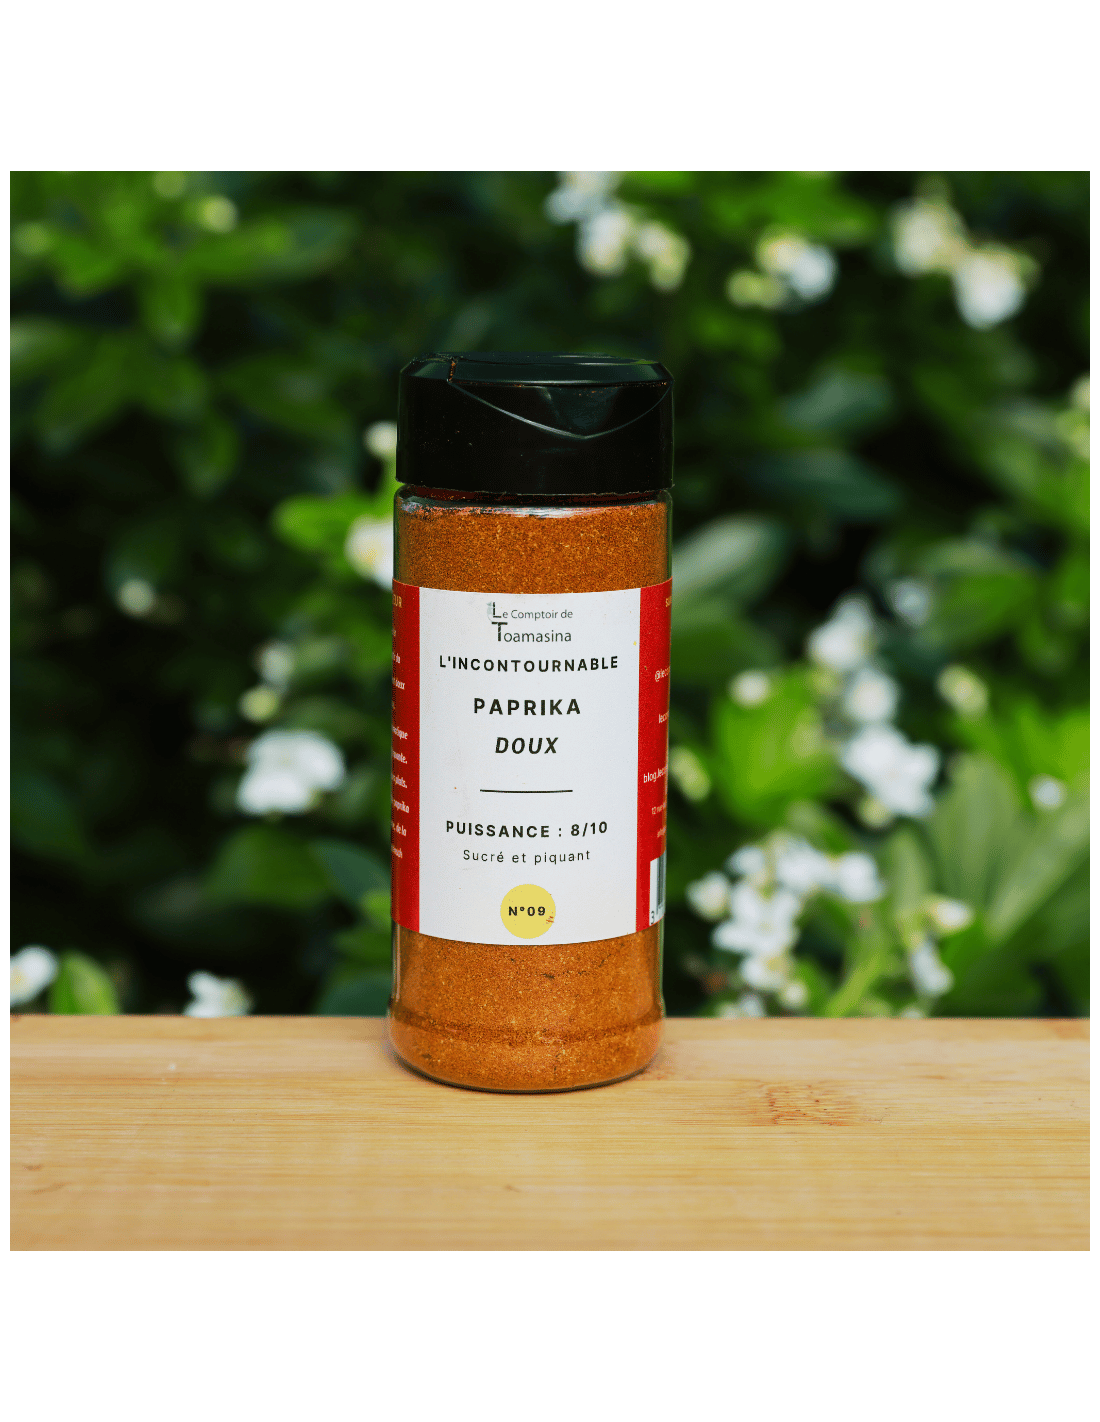 Paprika fumé doux Pimentón qualité exceptionnelle - La cuisine des épices